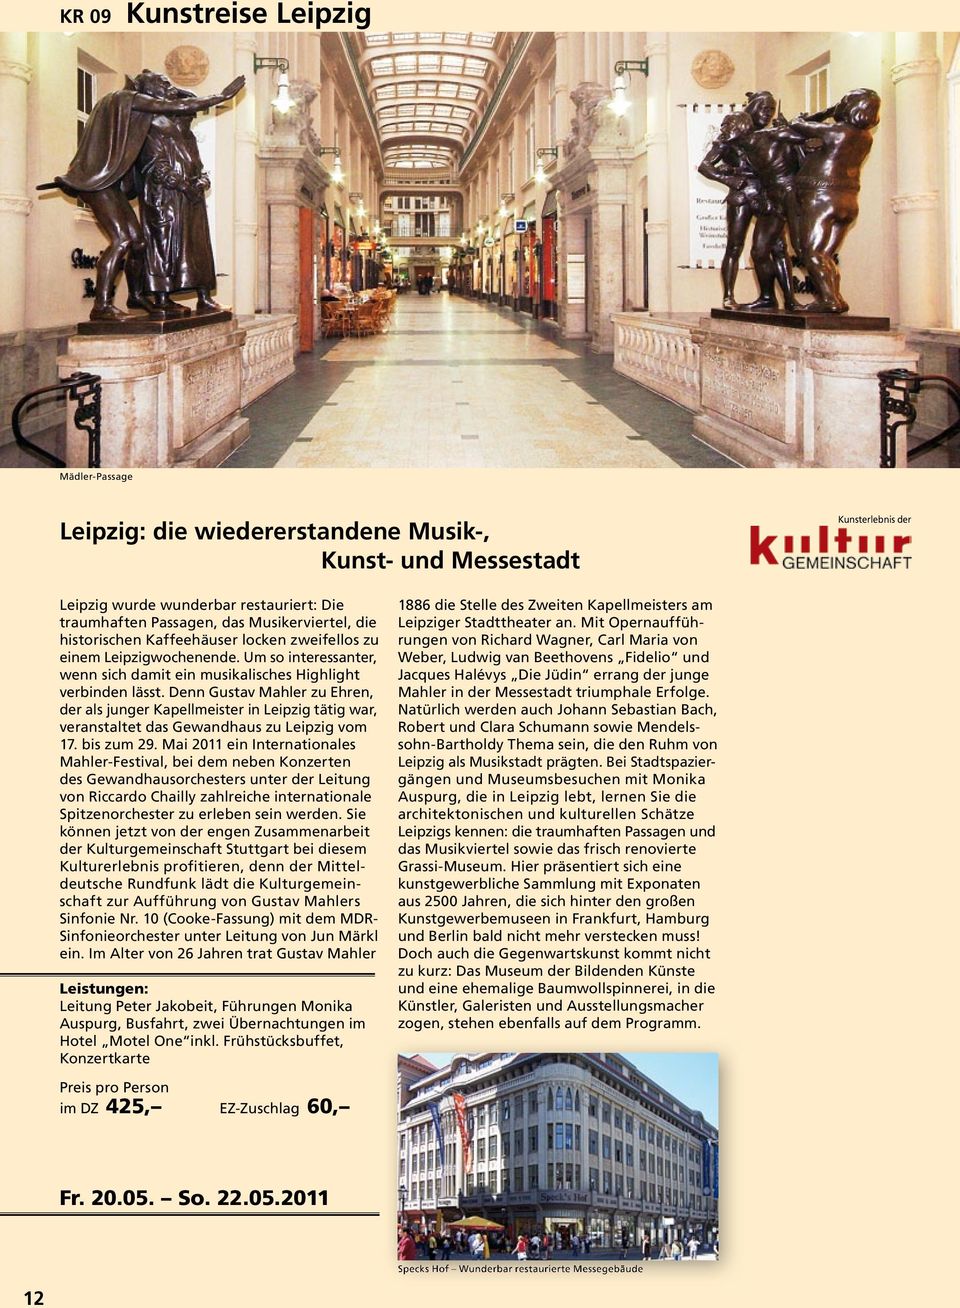 Denn Gustav Mahler zu Ehren, der als junger Kapellmeister in Leipzig tätig war, veranstaltet das Gewandhaus zu Leipzig vom 17. bis zum 29.